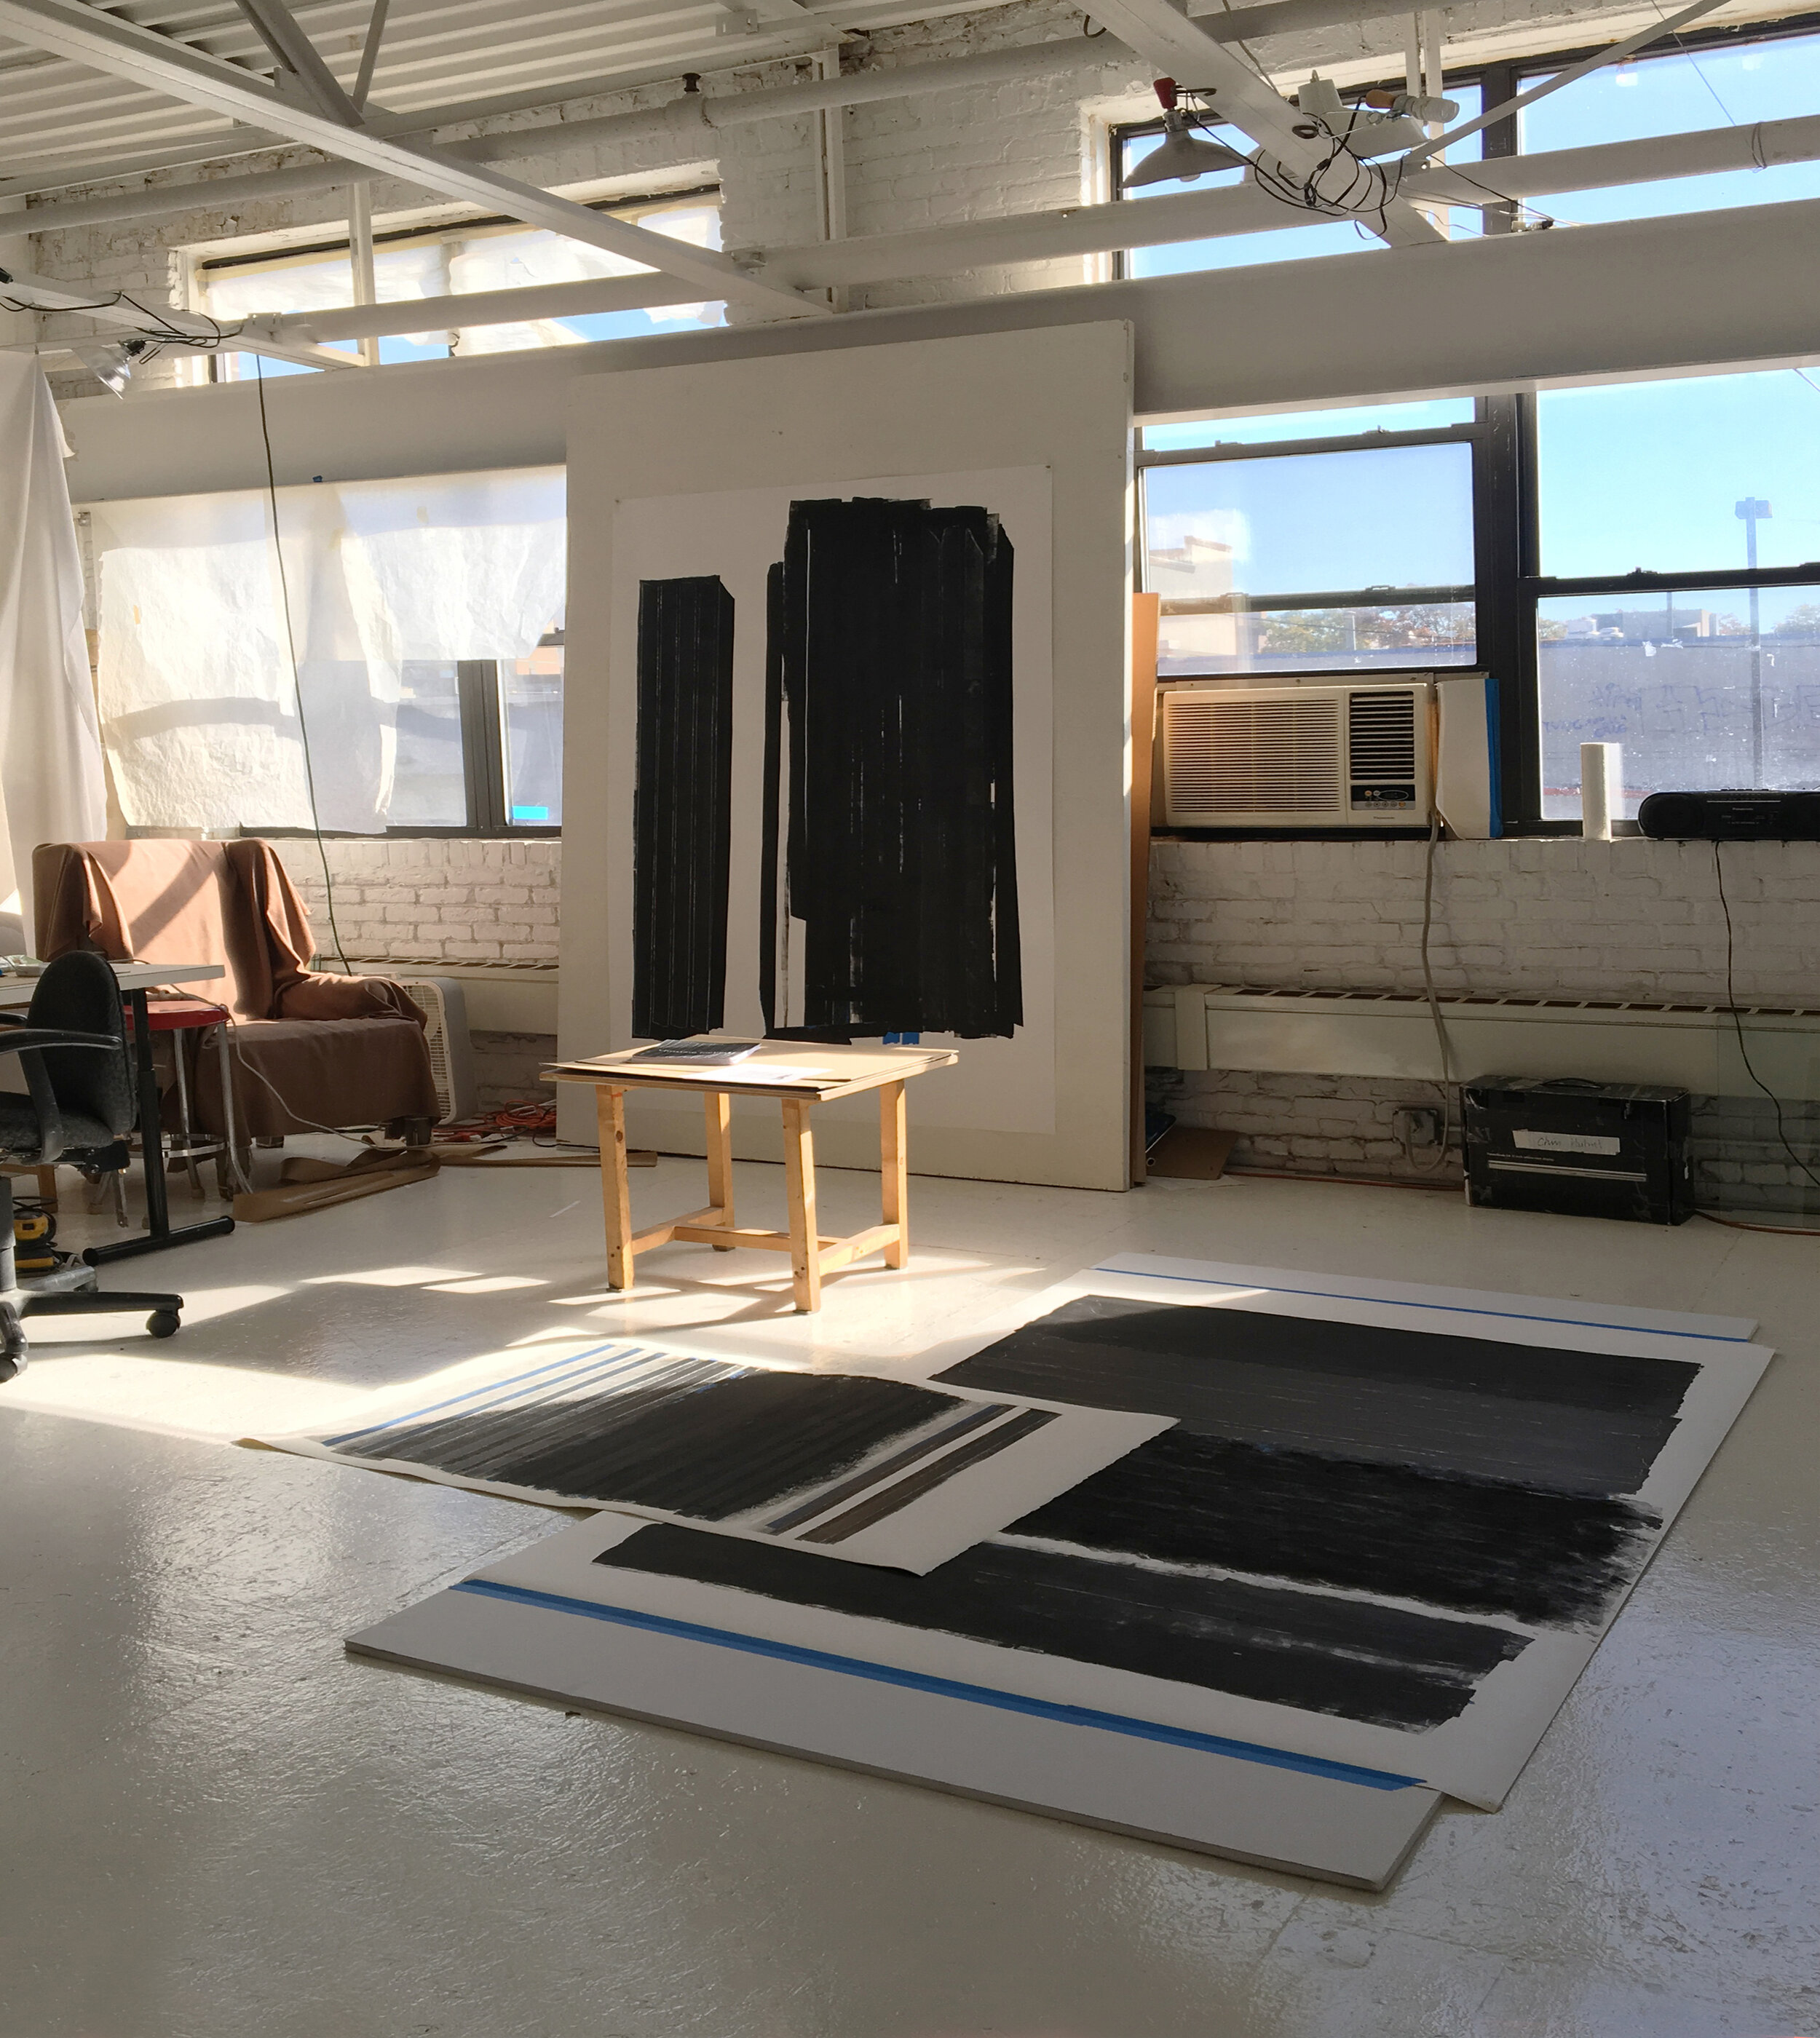  Studio, 2019 